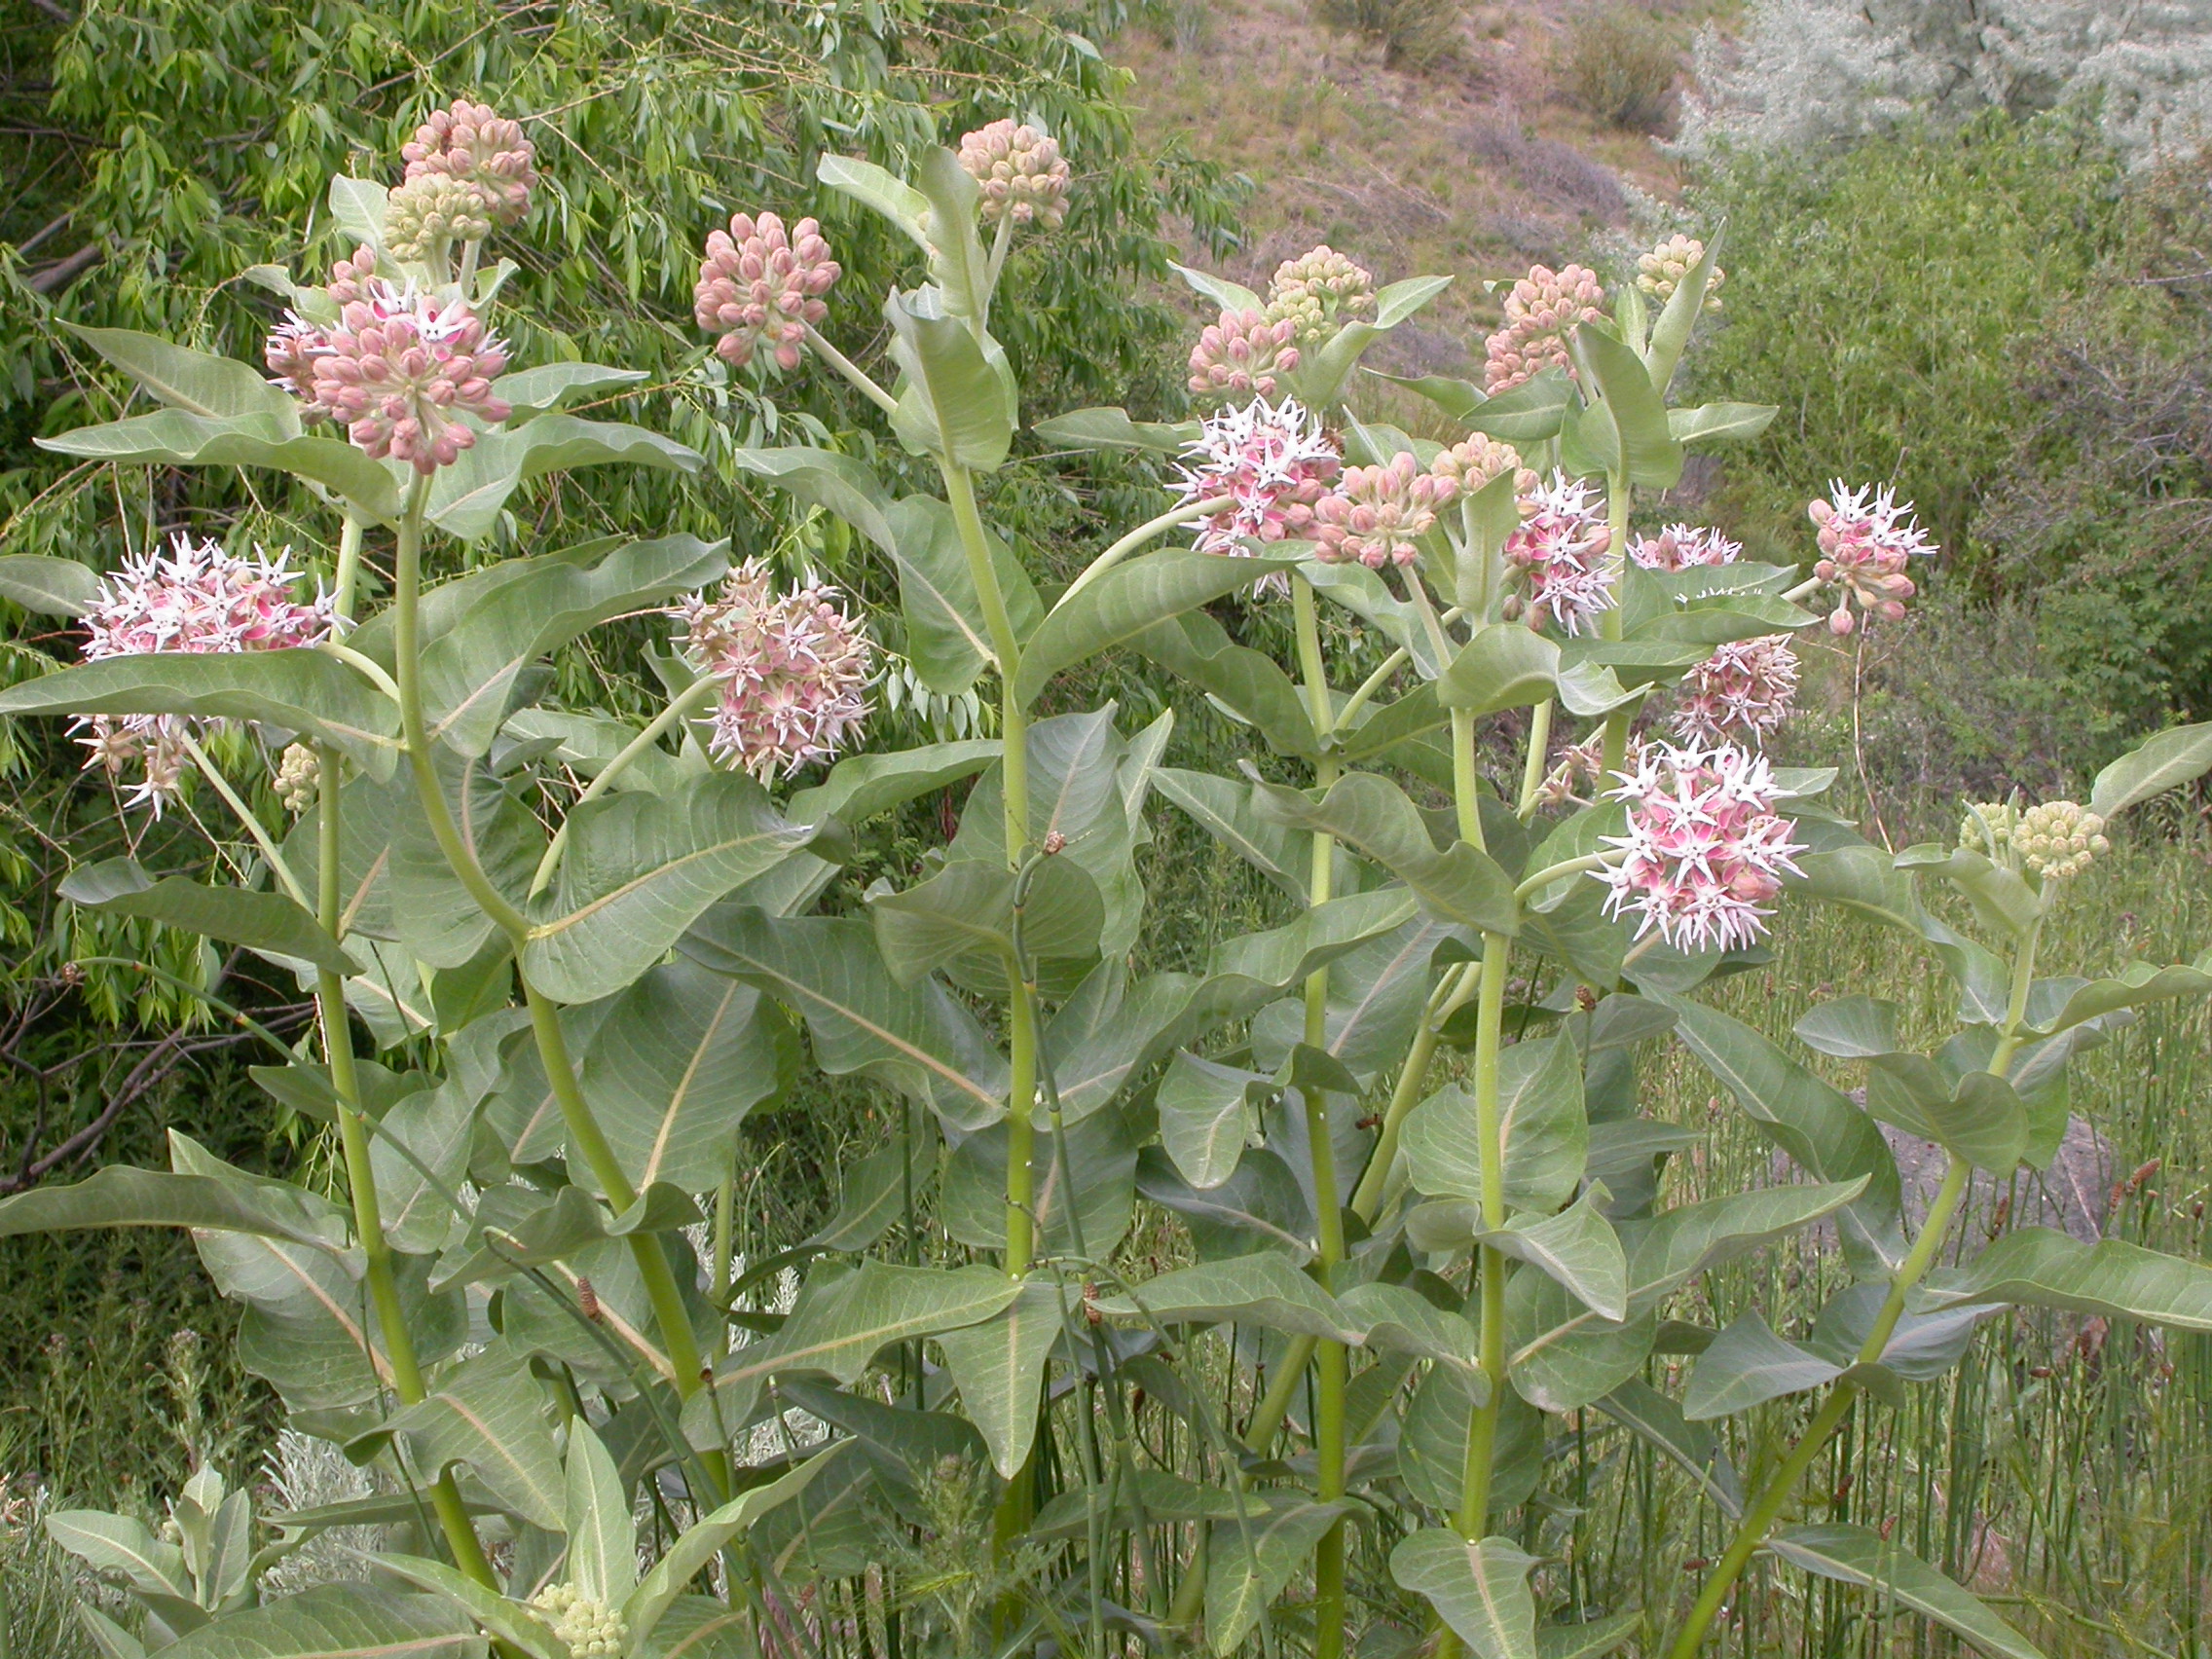 Showy milkweed (Asclepias speciosa)